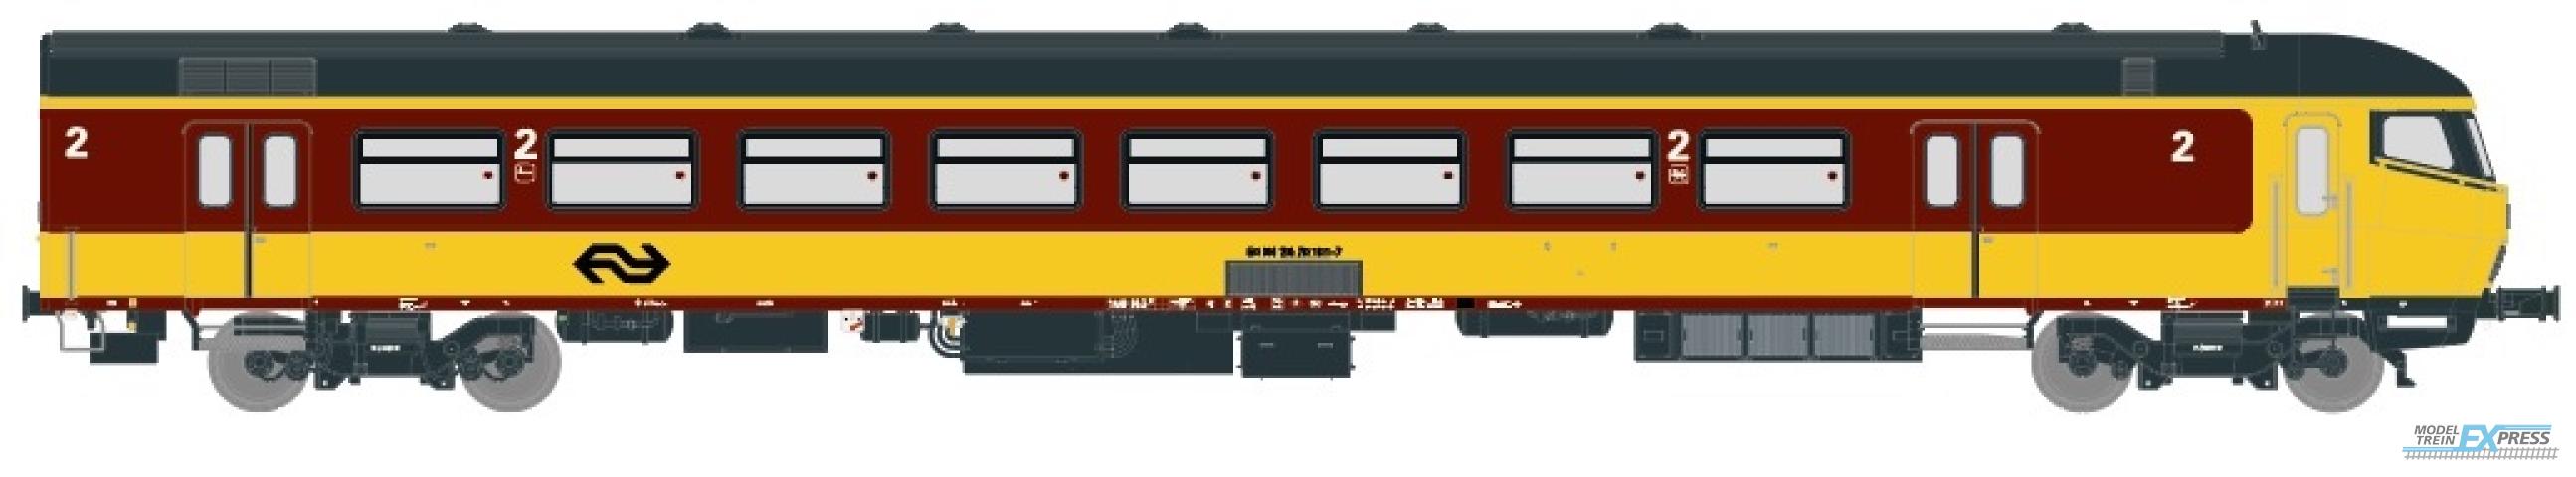 Exact-train 11086 NS ICR (Originalversion) für den Beneluxzug nach Belgien Steuerwagen Bs ( Farbe Gelb / Rot) (DC), Ep. IV